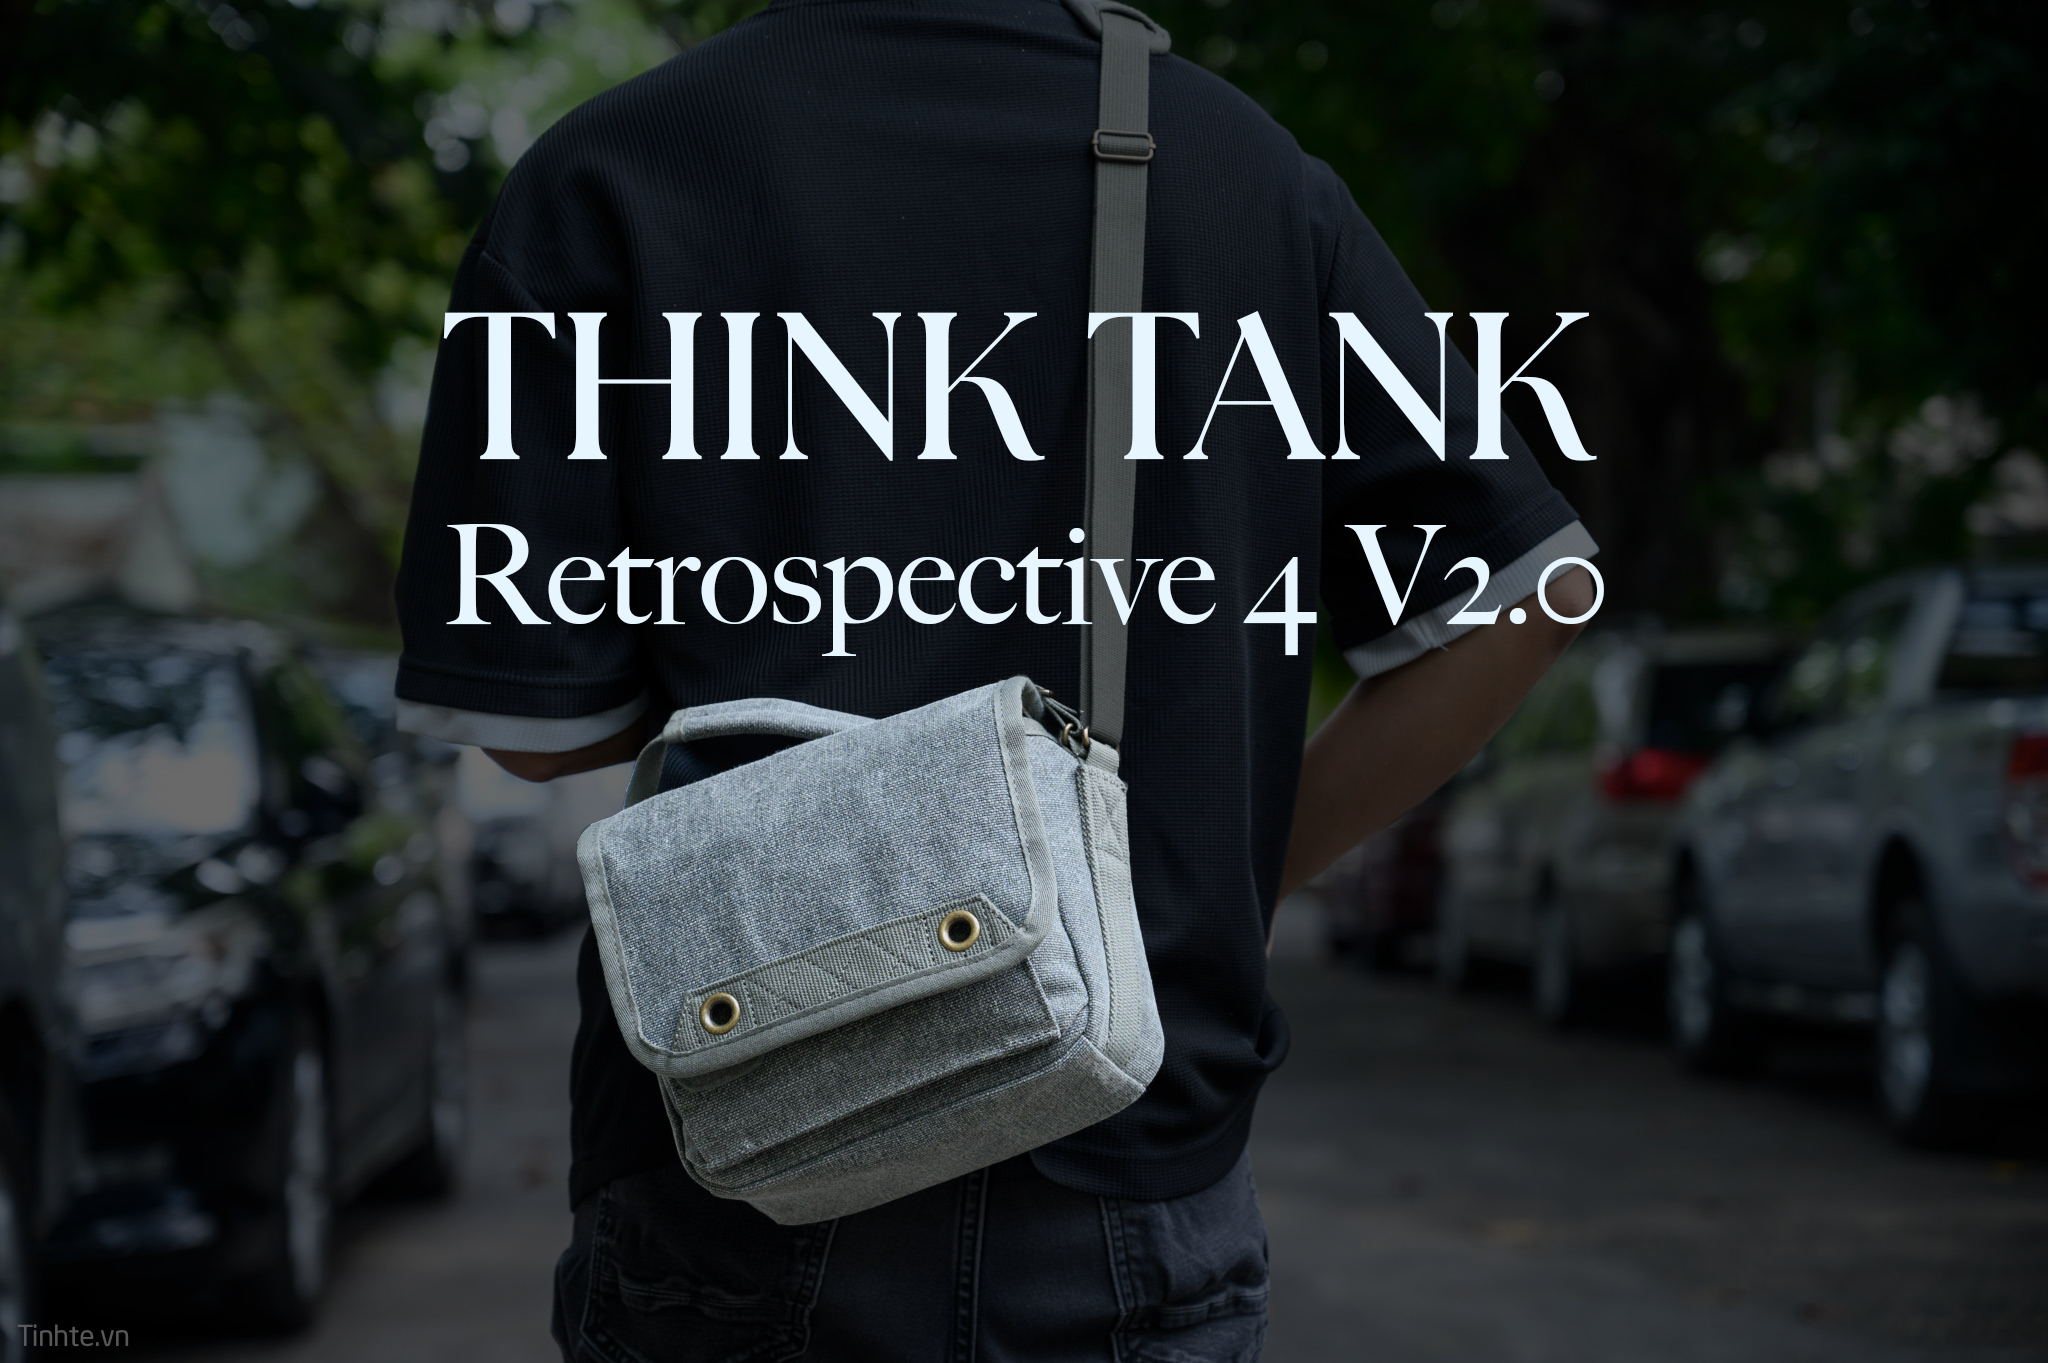 Trên tay túi máy ảnh Think Tank Retrospective 4 V2.0: Nhỏ gọn, đẹp, cao cấp, giá 2.750.000đ